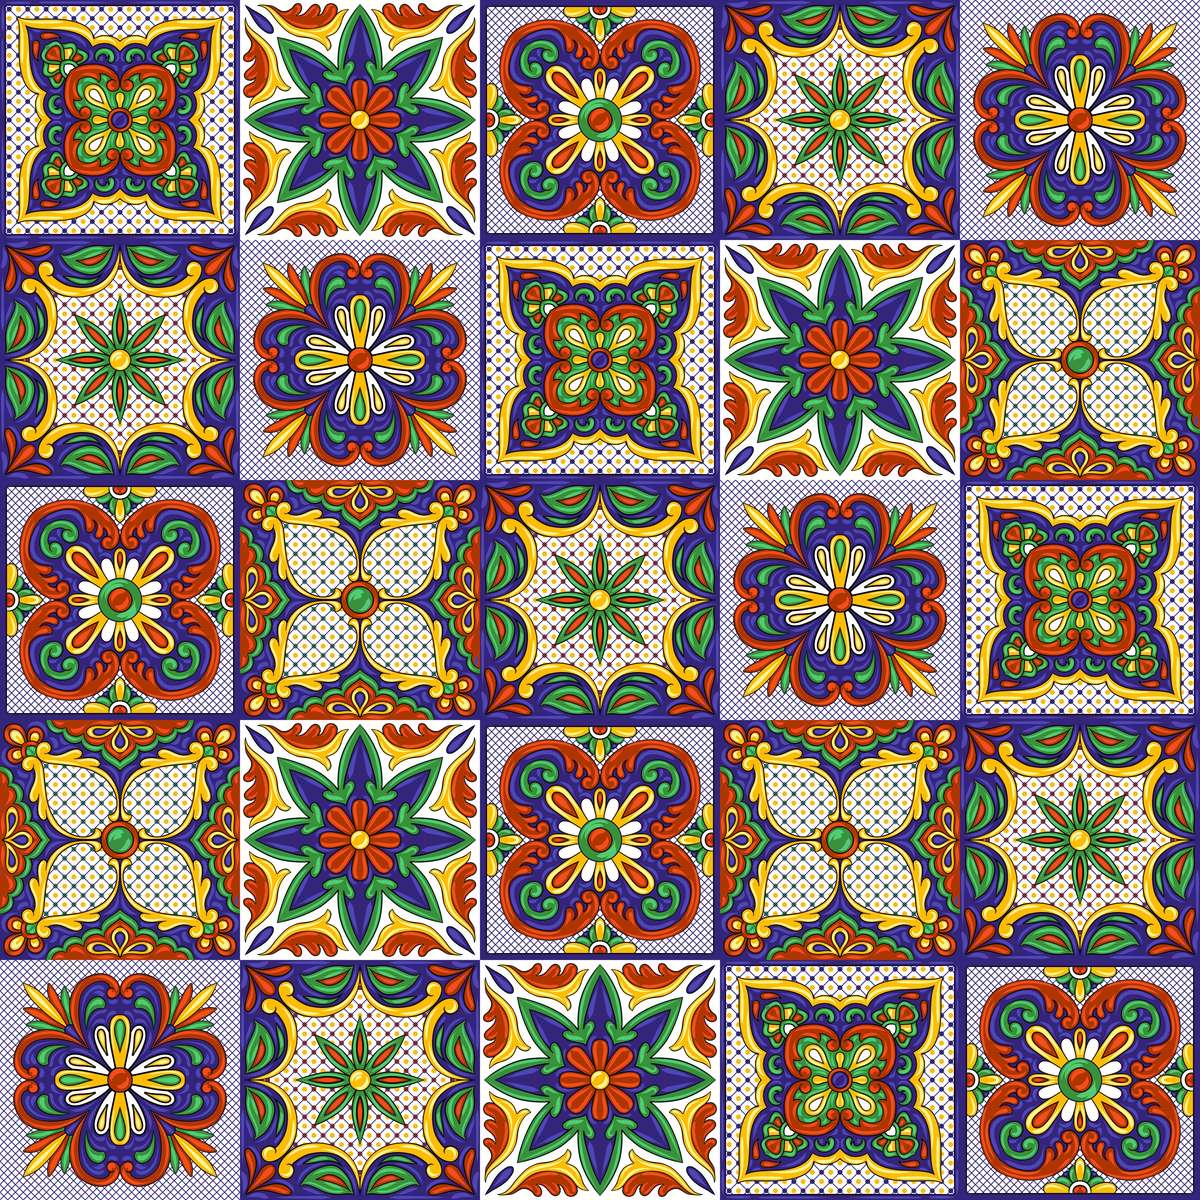 Colourful tiles online puzzle